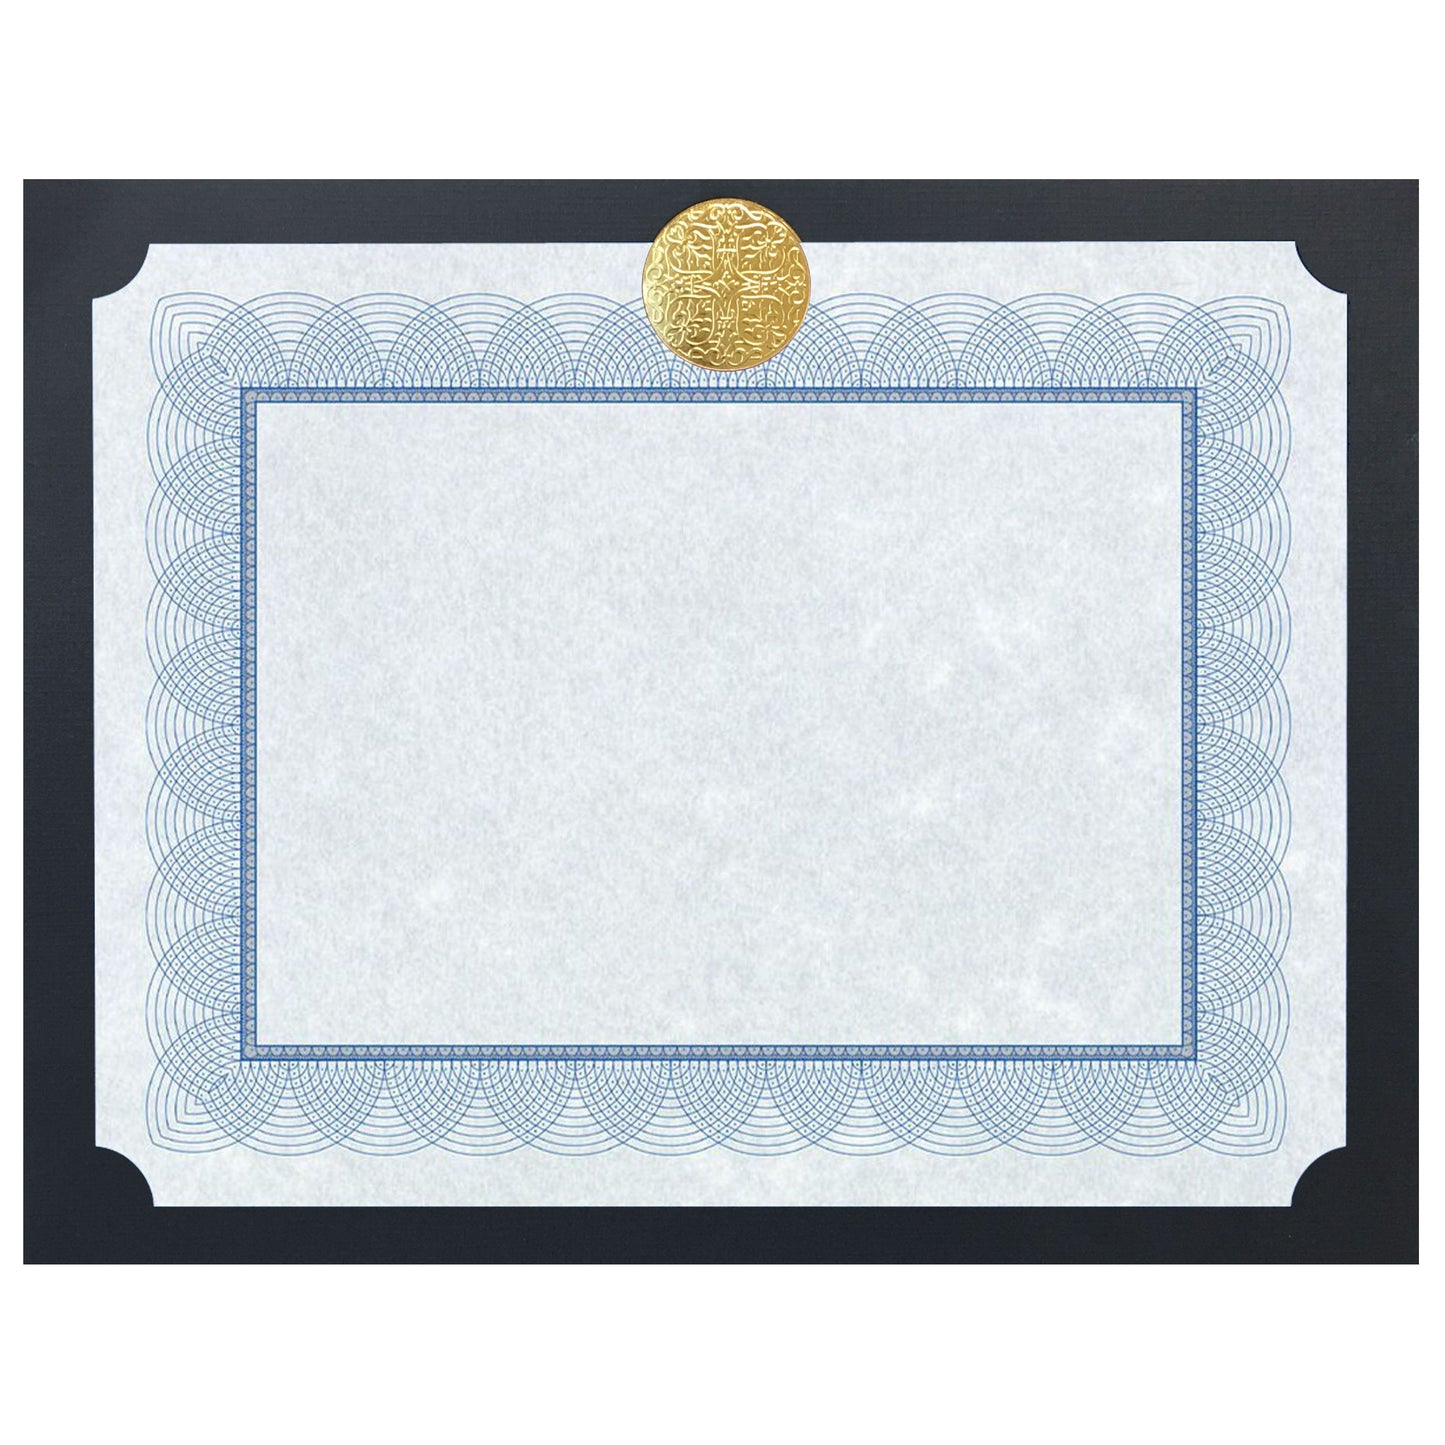 St. James® Elite™ Medallion Presentation Cards/Certificate Holder, Black with Gold Medallion, Pack of 25